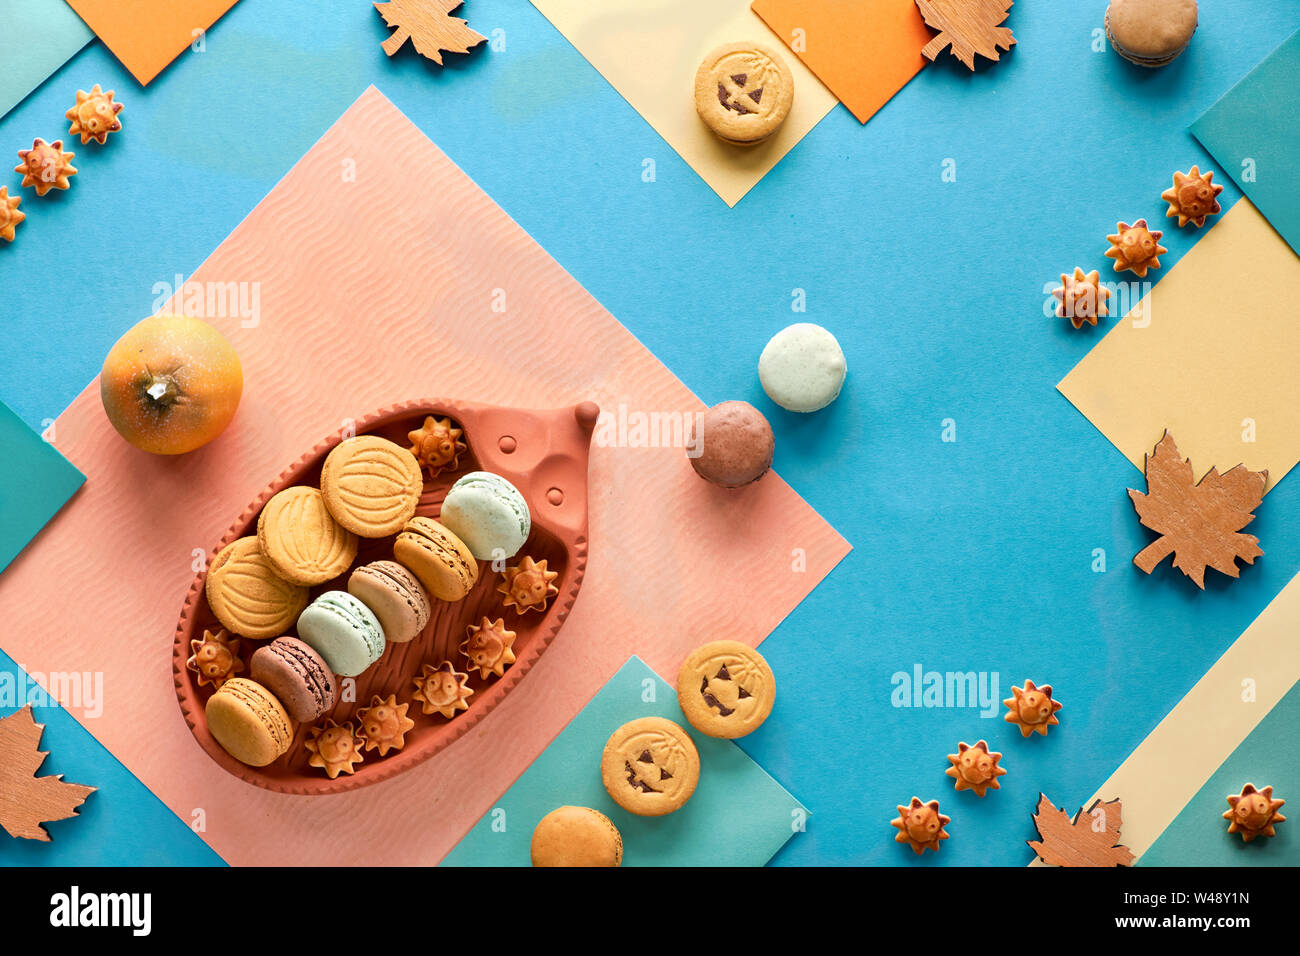 Automne fond géométrique, le papier à plat avec les cookies d'Halloween, les macarons et les décorations saisonnières Banque D'Images